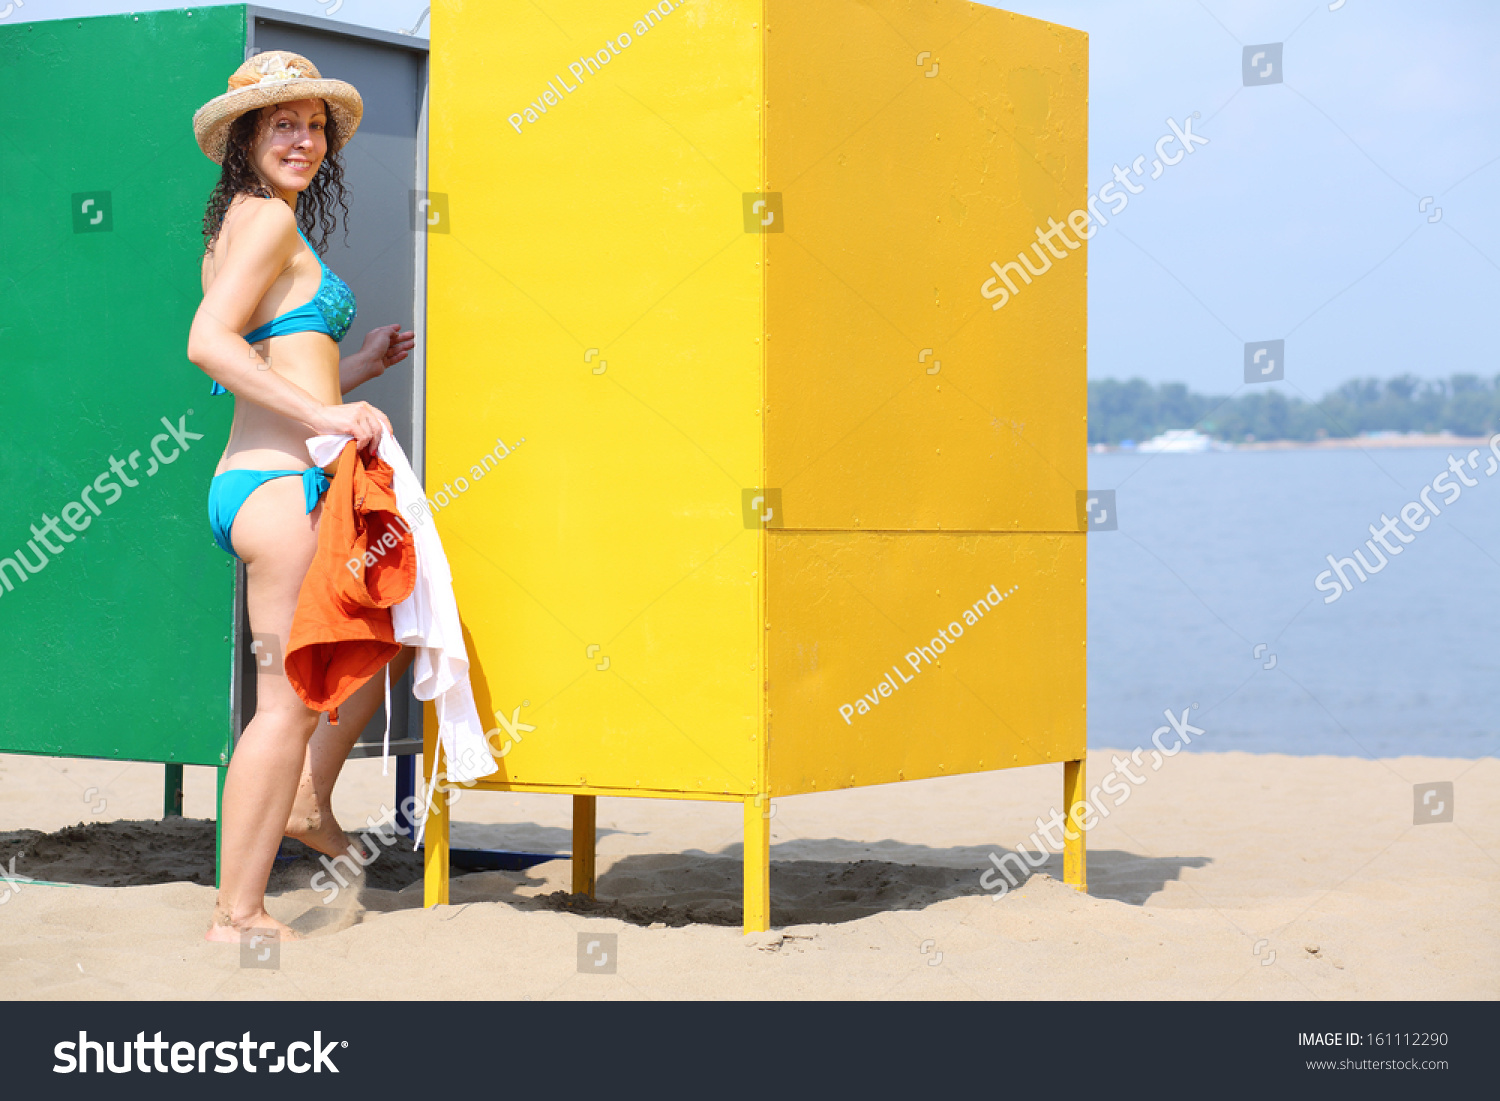 Подглядывают за девушкой переодевающейся в кабинке на пляже